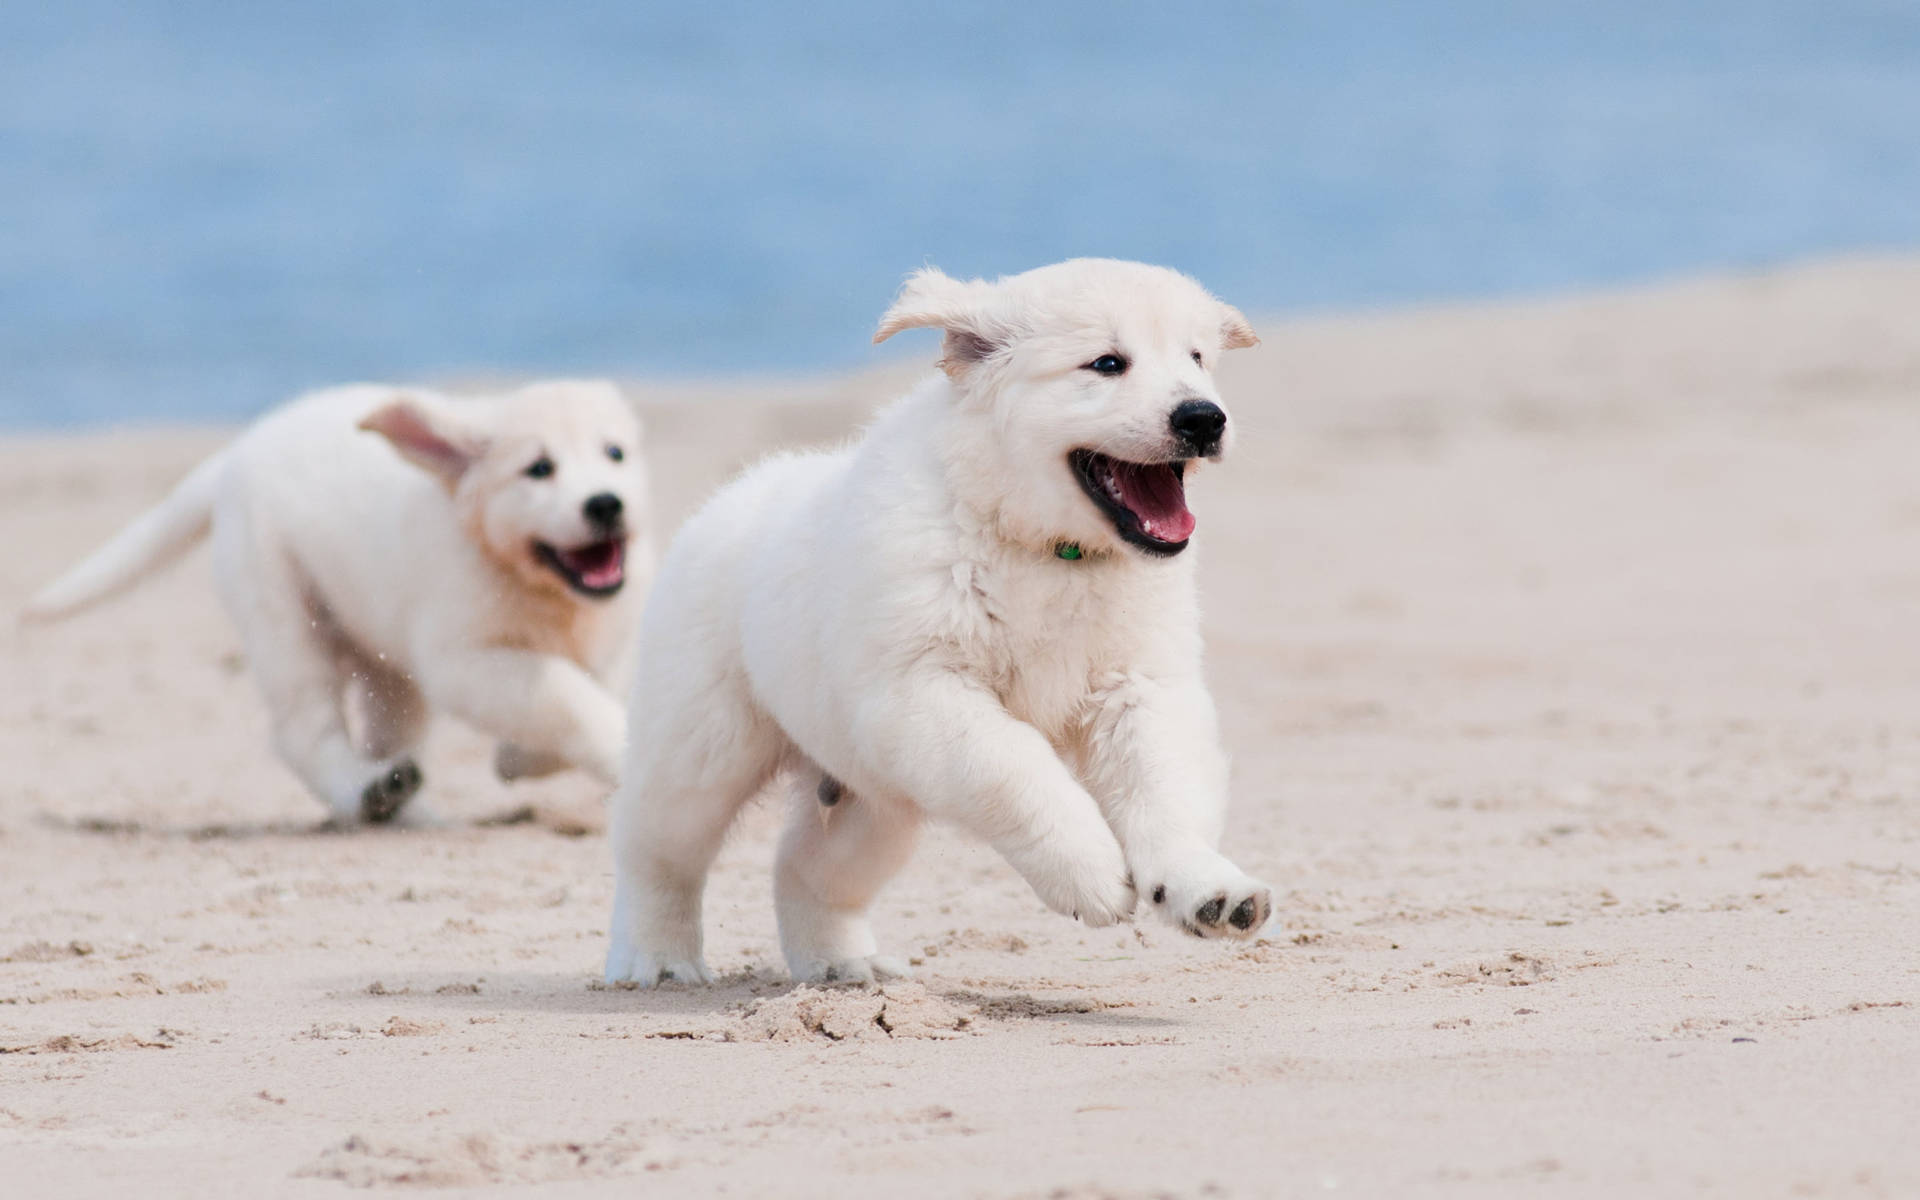 Playful Golden Retriever Puppies